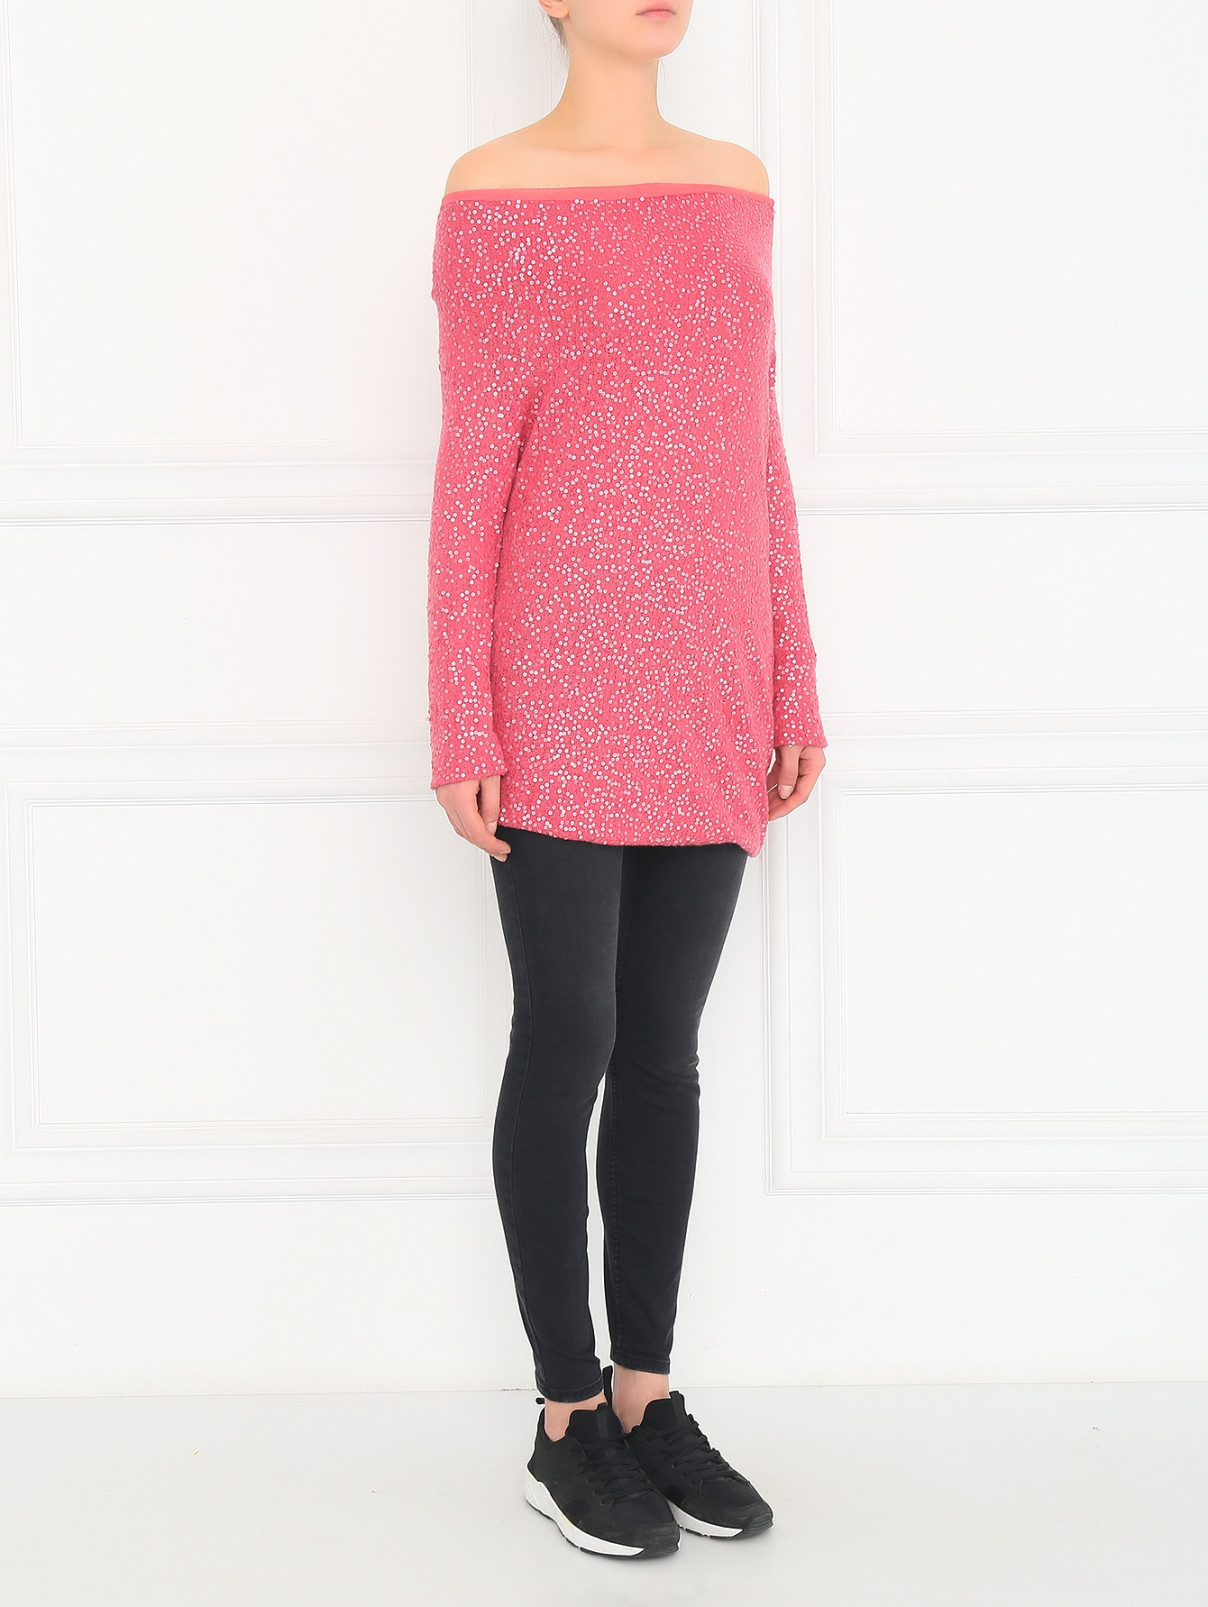 Джемпер декорированный пайетками Donna Karan  –  Модель Общий вид  – Цвет:  Розовый